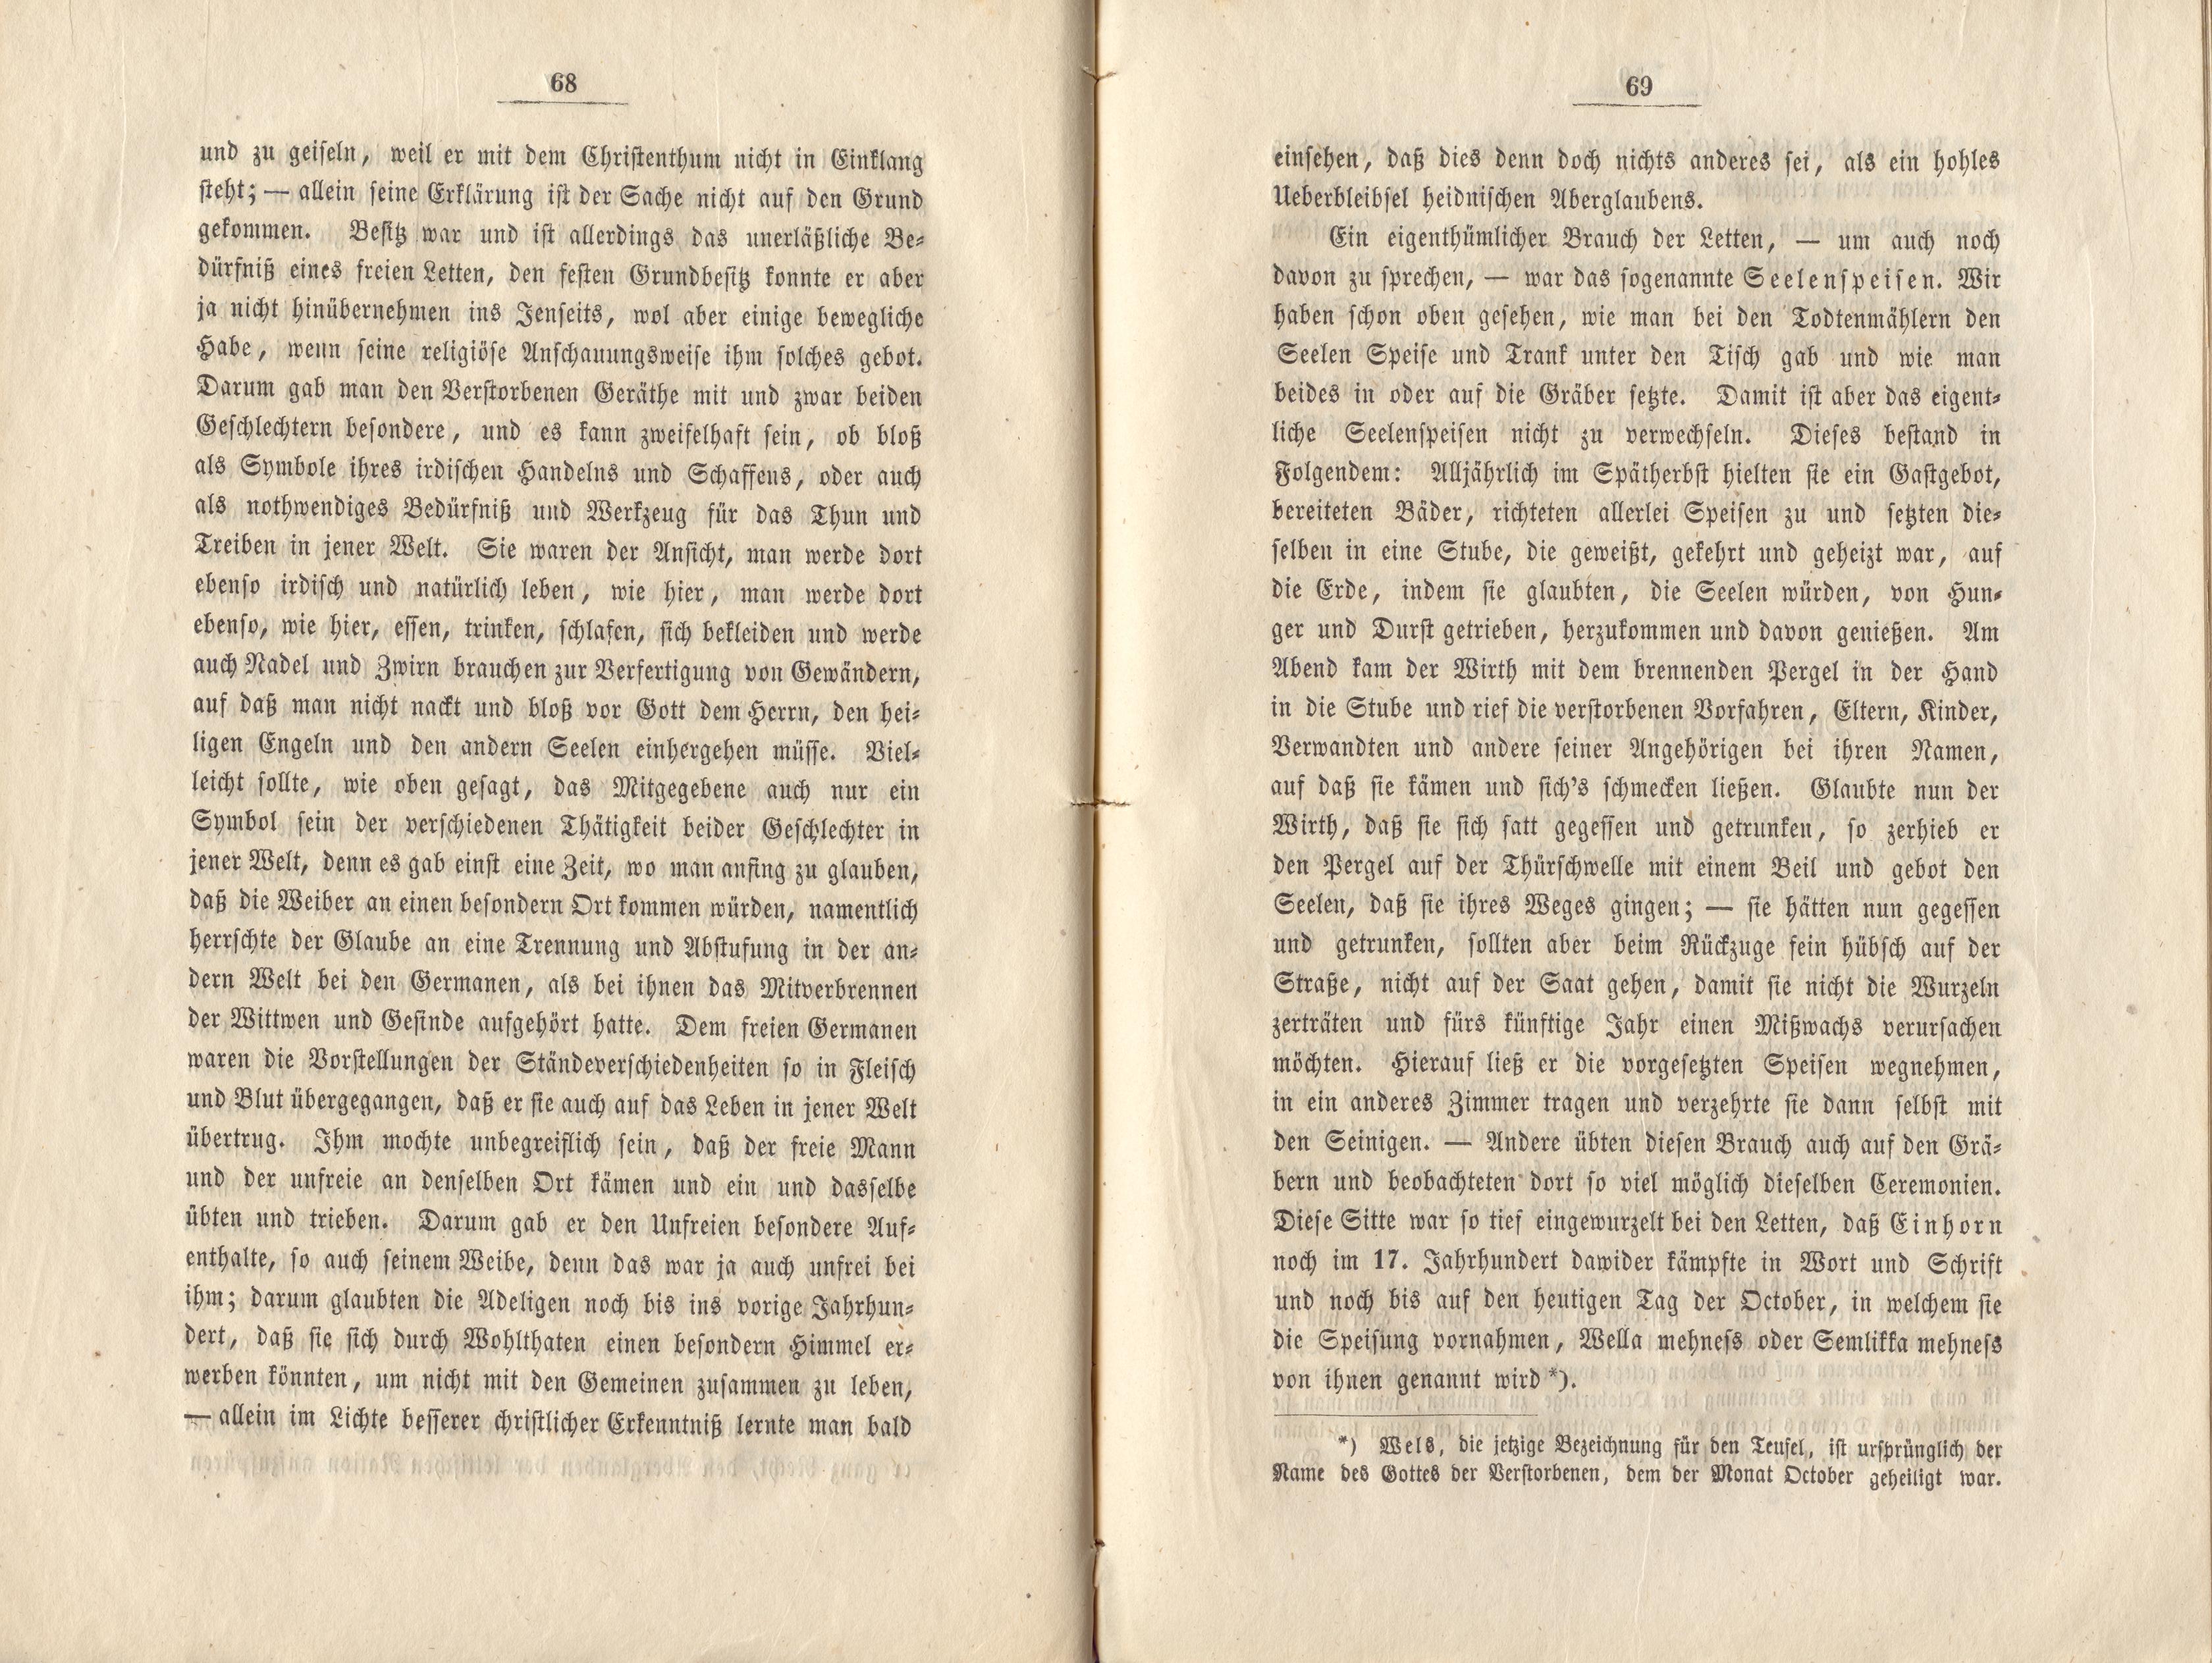 Felliner Blätter (1859) | 35. (68-69) Haupttext